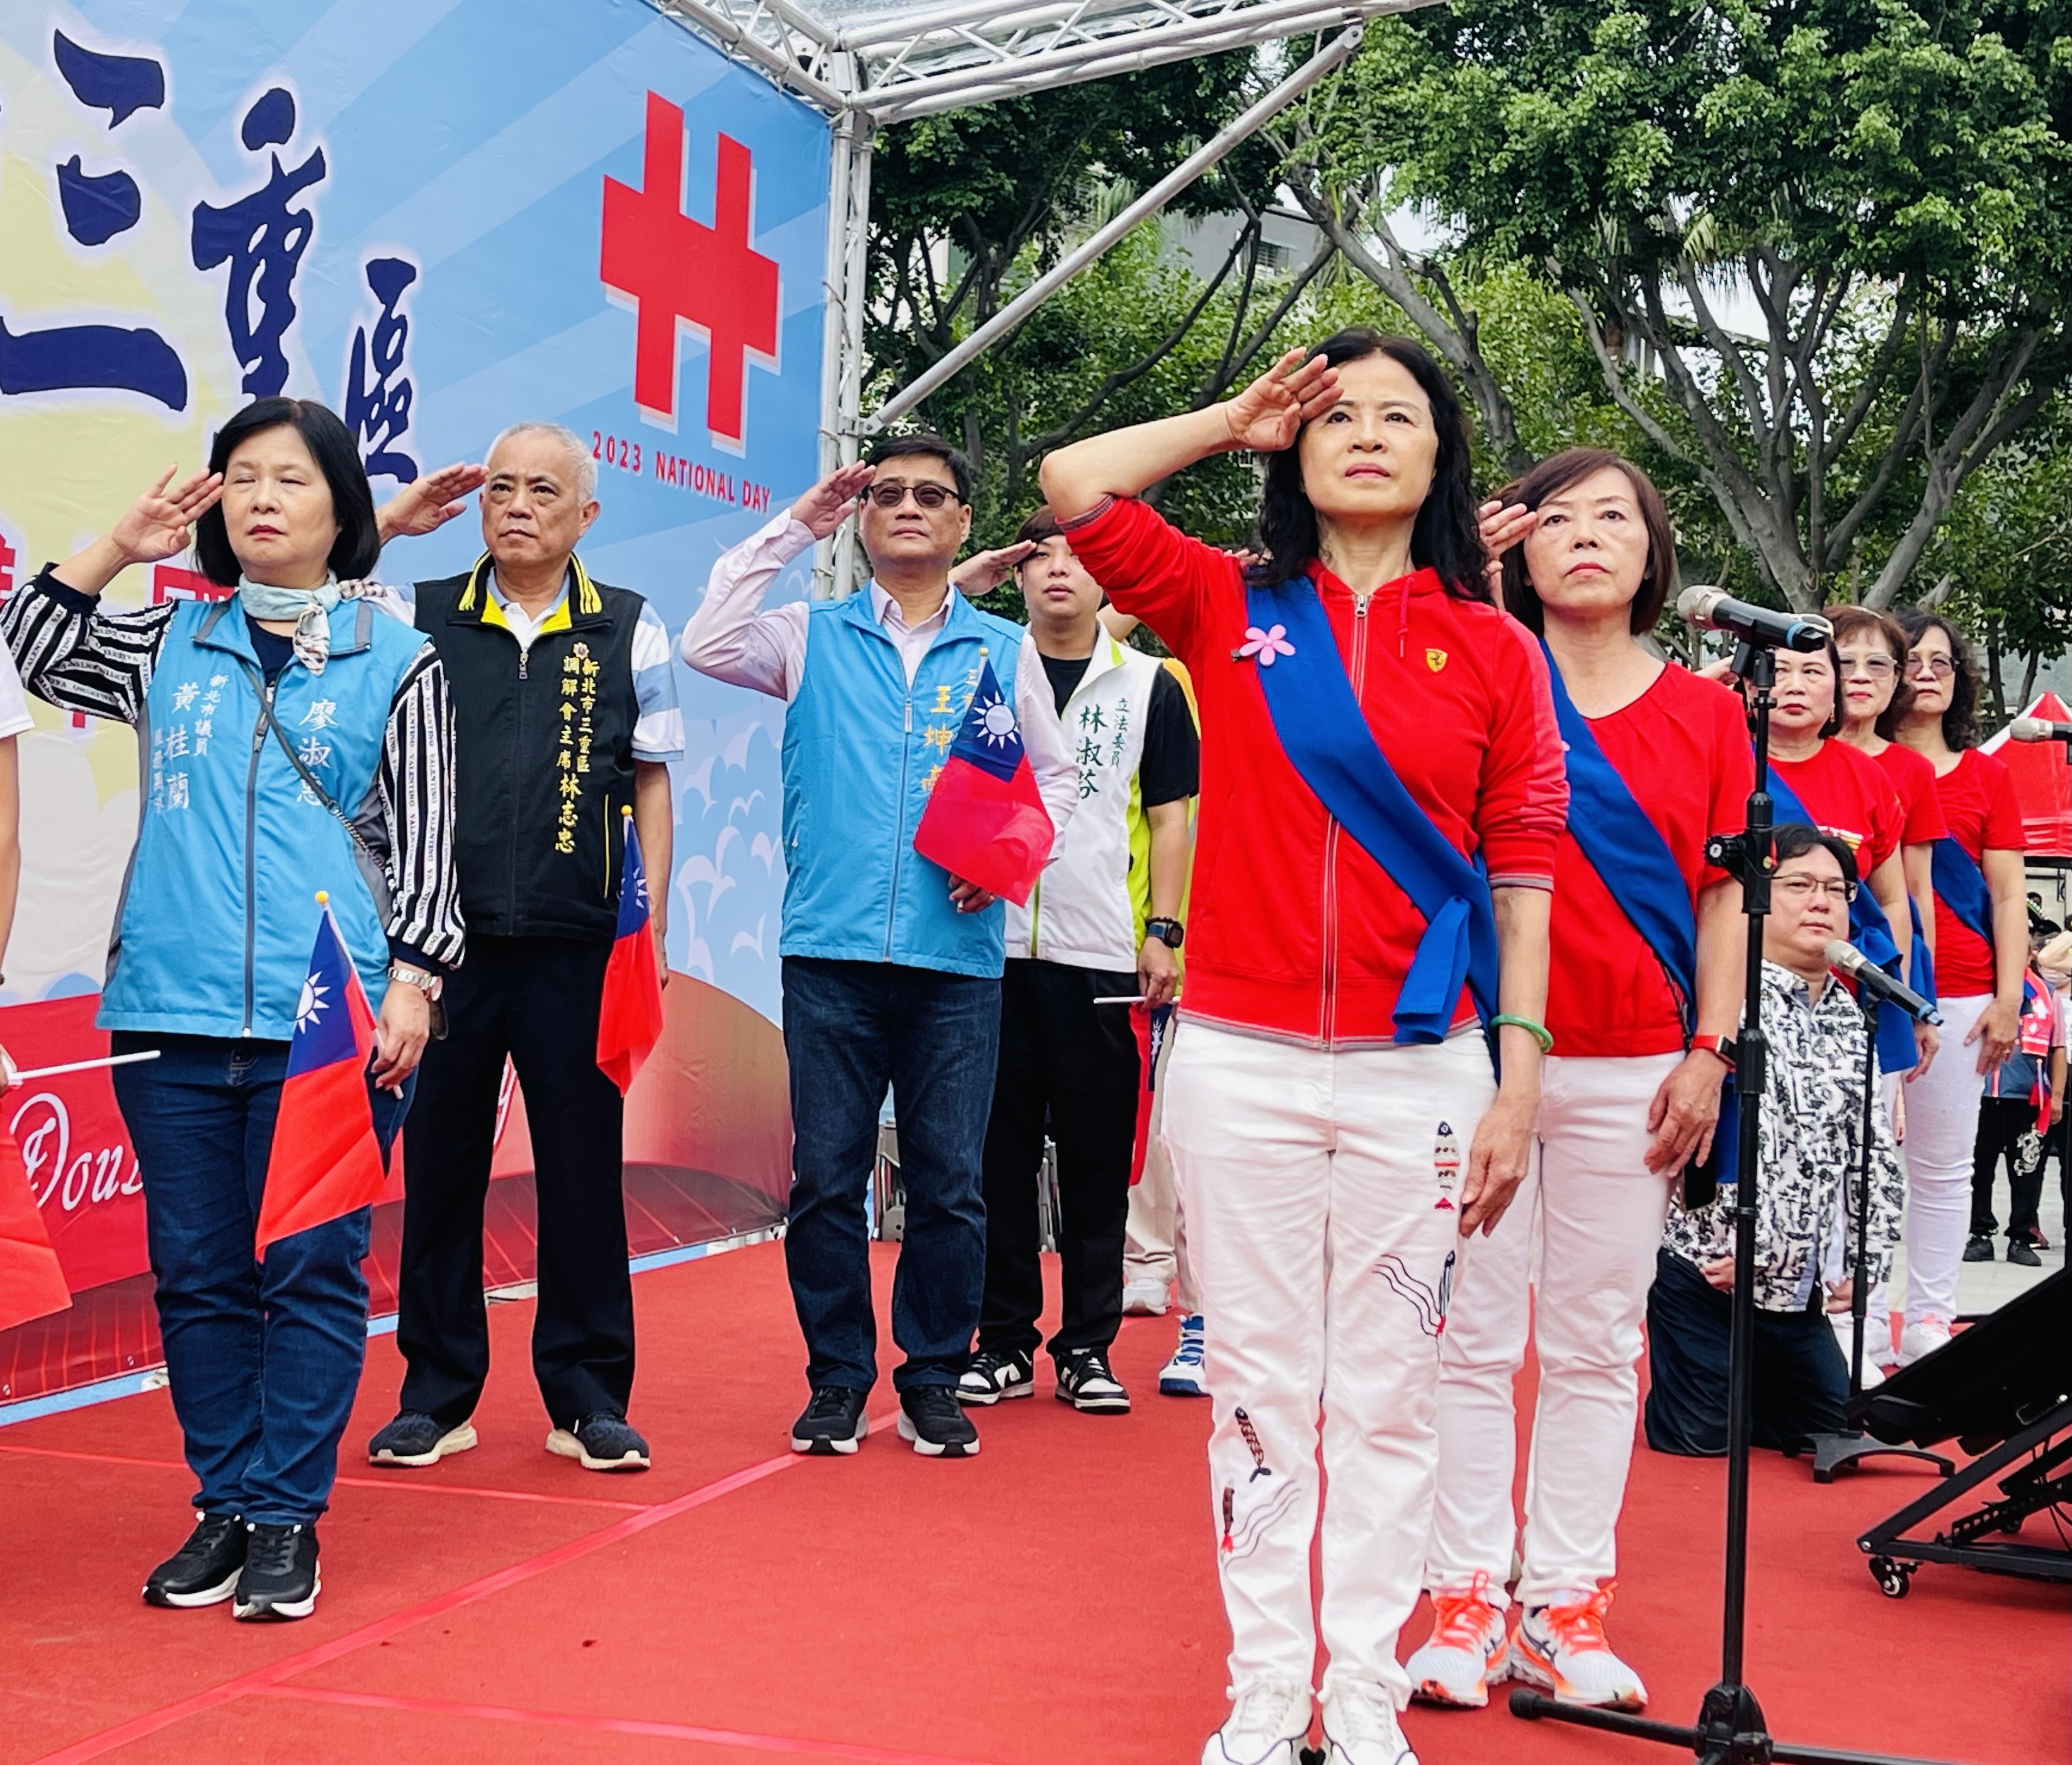 三重國慶升旗慶典，由「生命鬥士–王奇男」先生及三重寶貝志工合唱團共同領唱國歌。